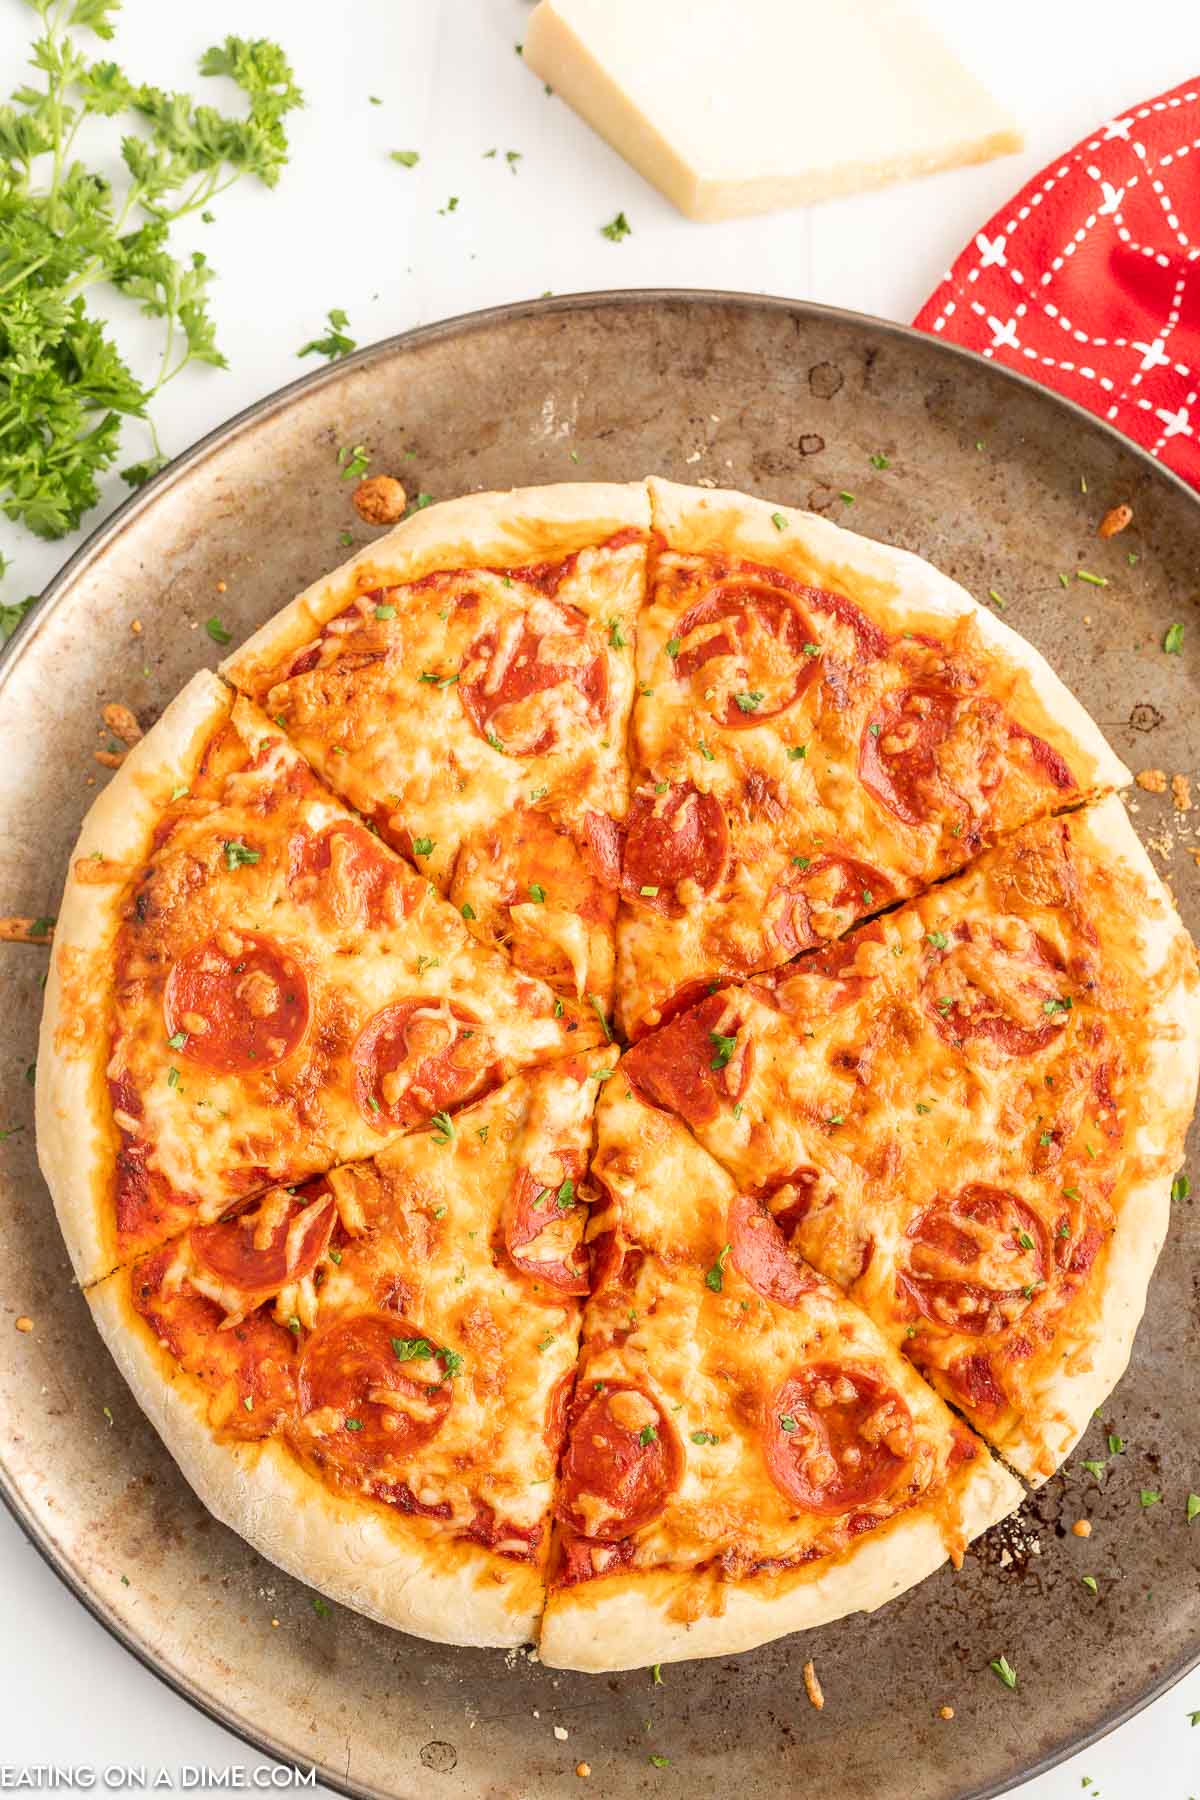 https://www.eatingonadime.com/wp-content/uploads/2023/02/eod-homemade-pizza-dough-12.jpg